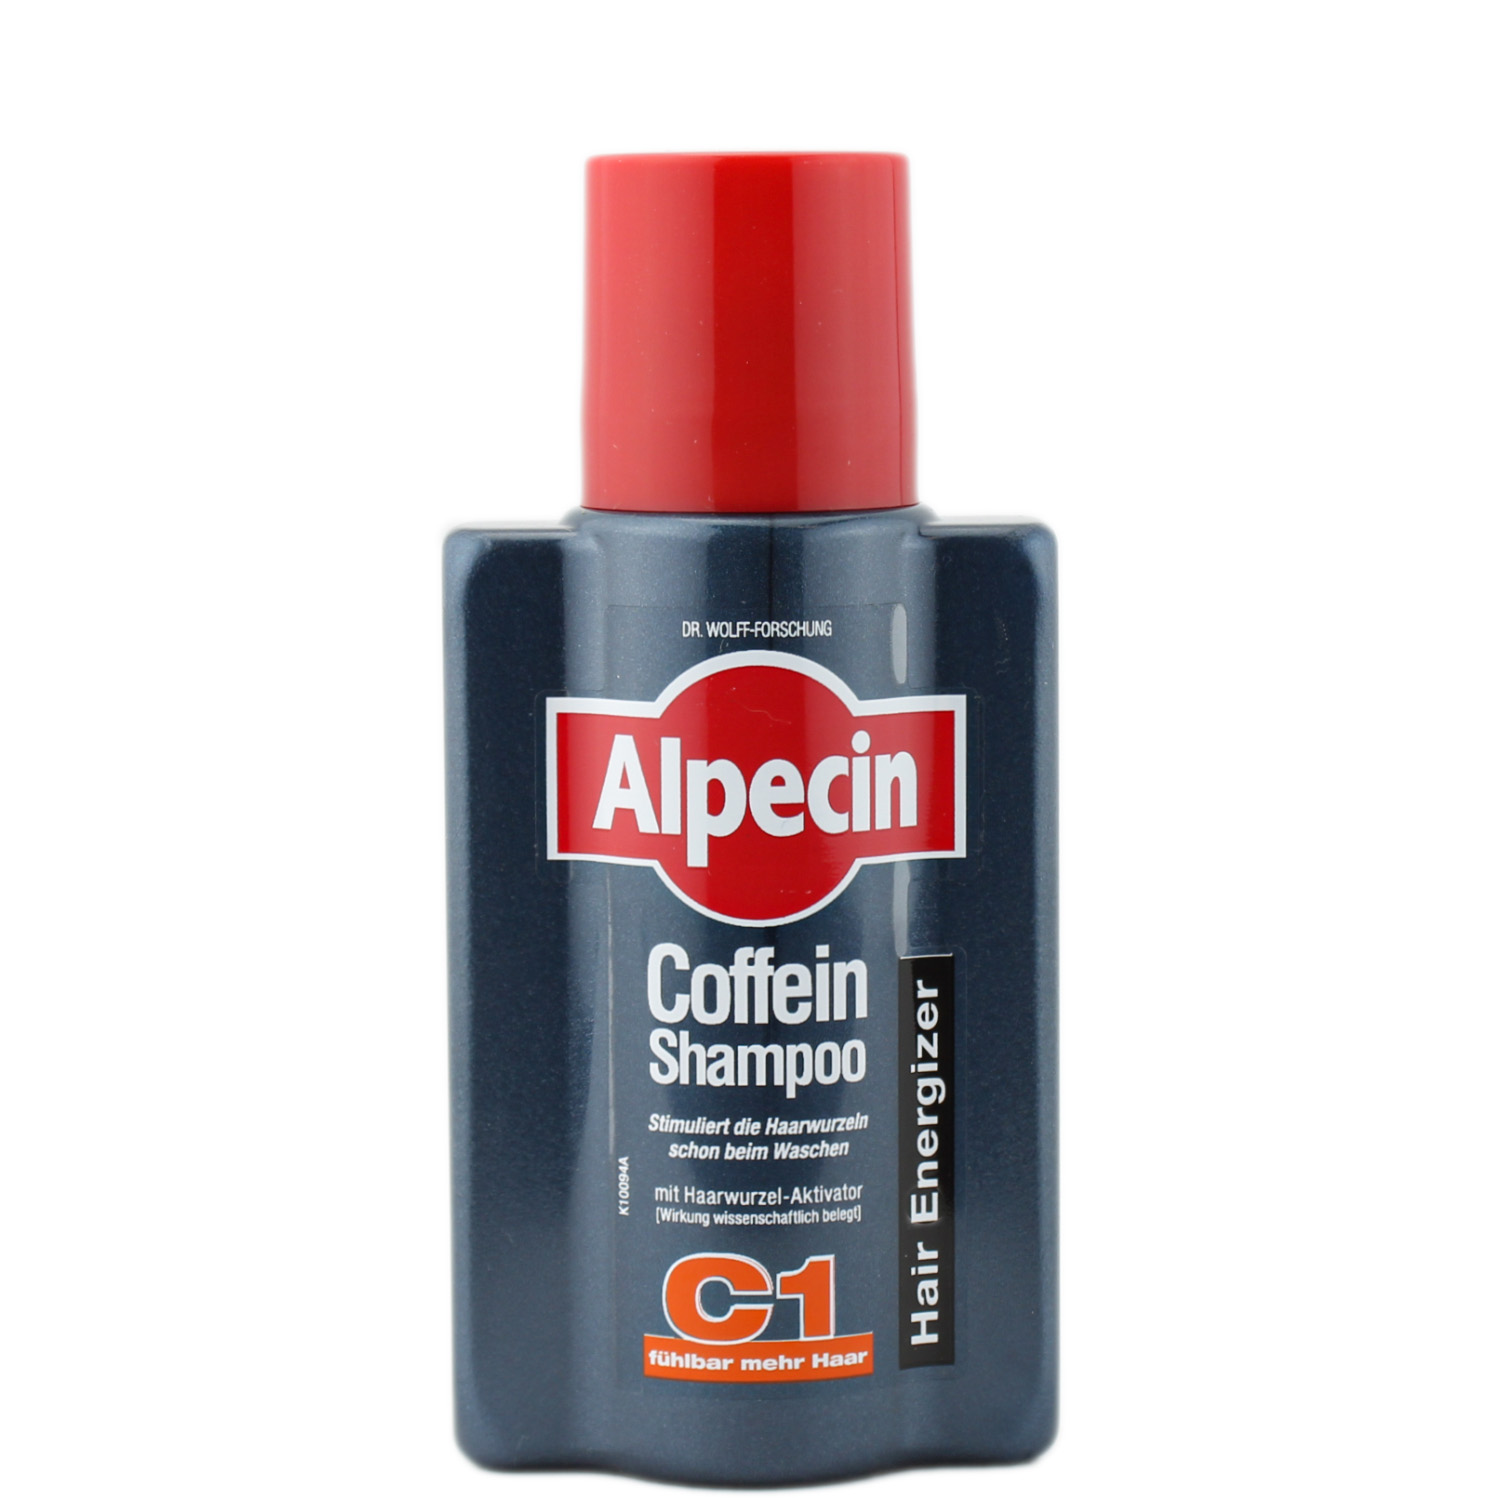 Alpecin Coffein Shampoo C1 als Reisegröße 75ml 